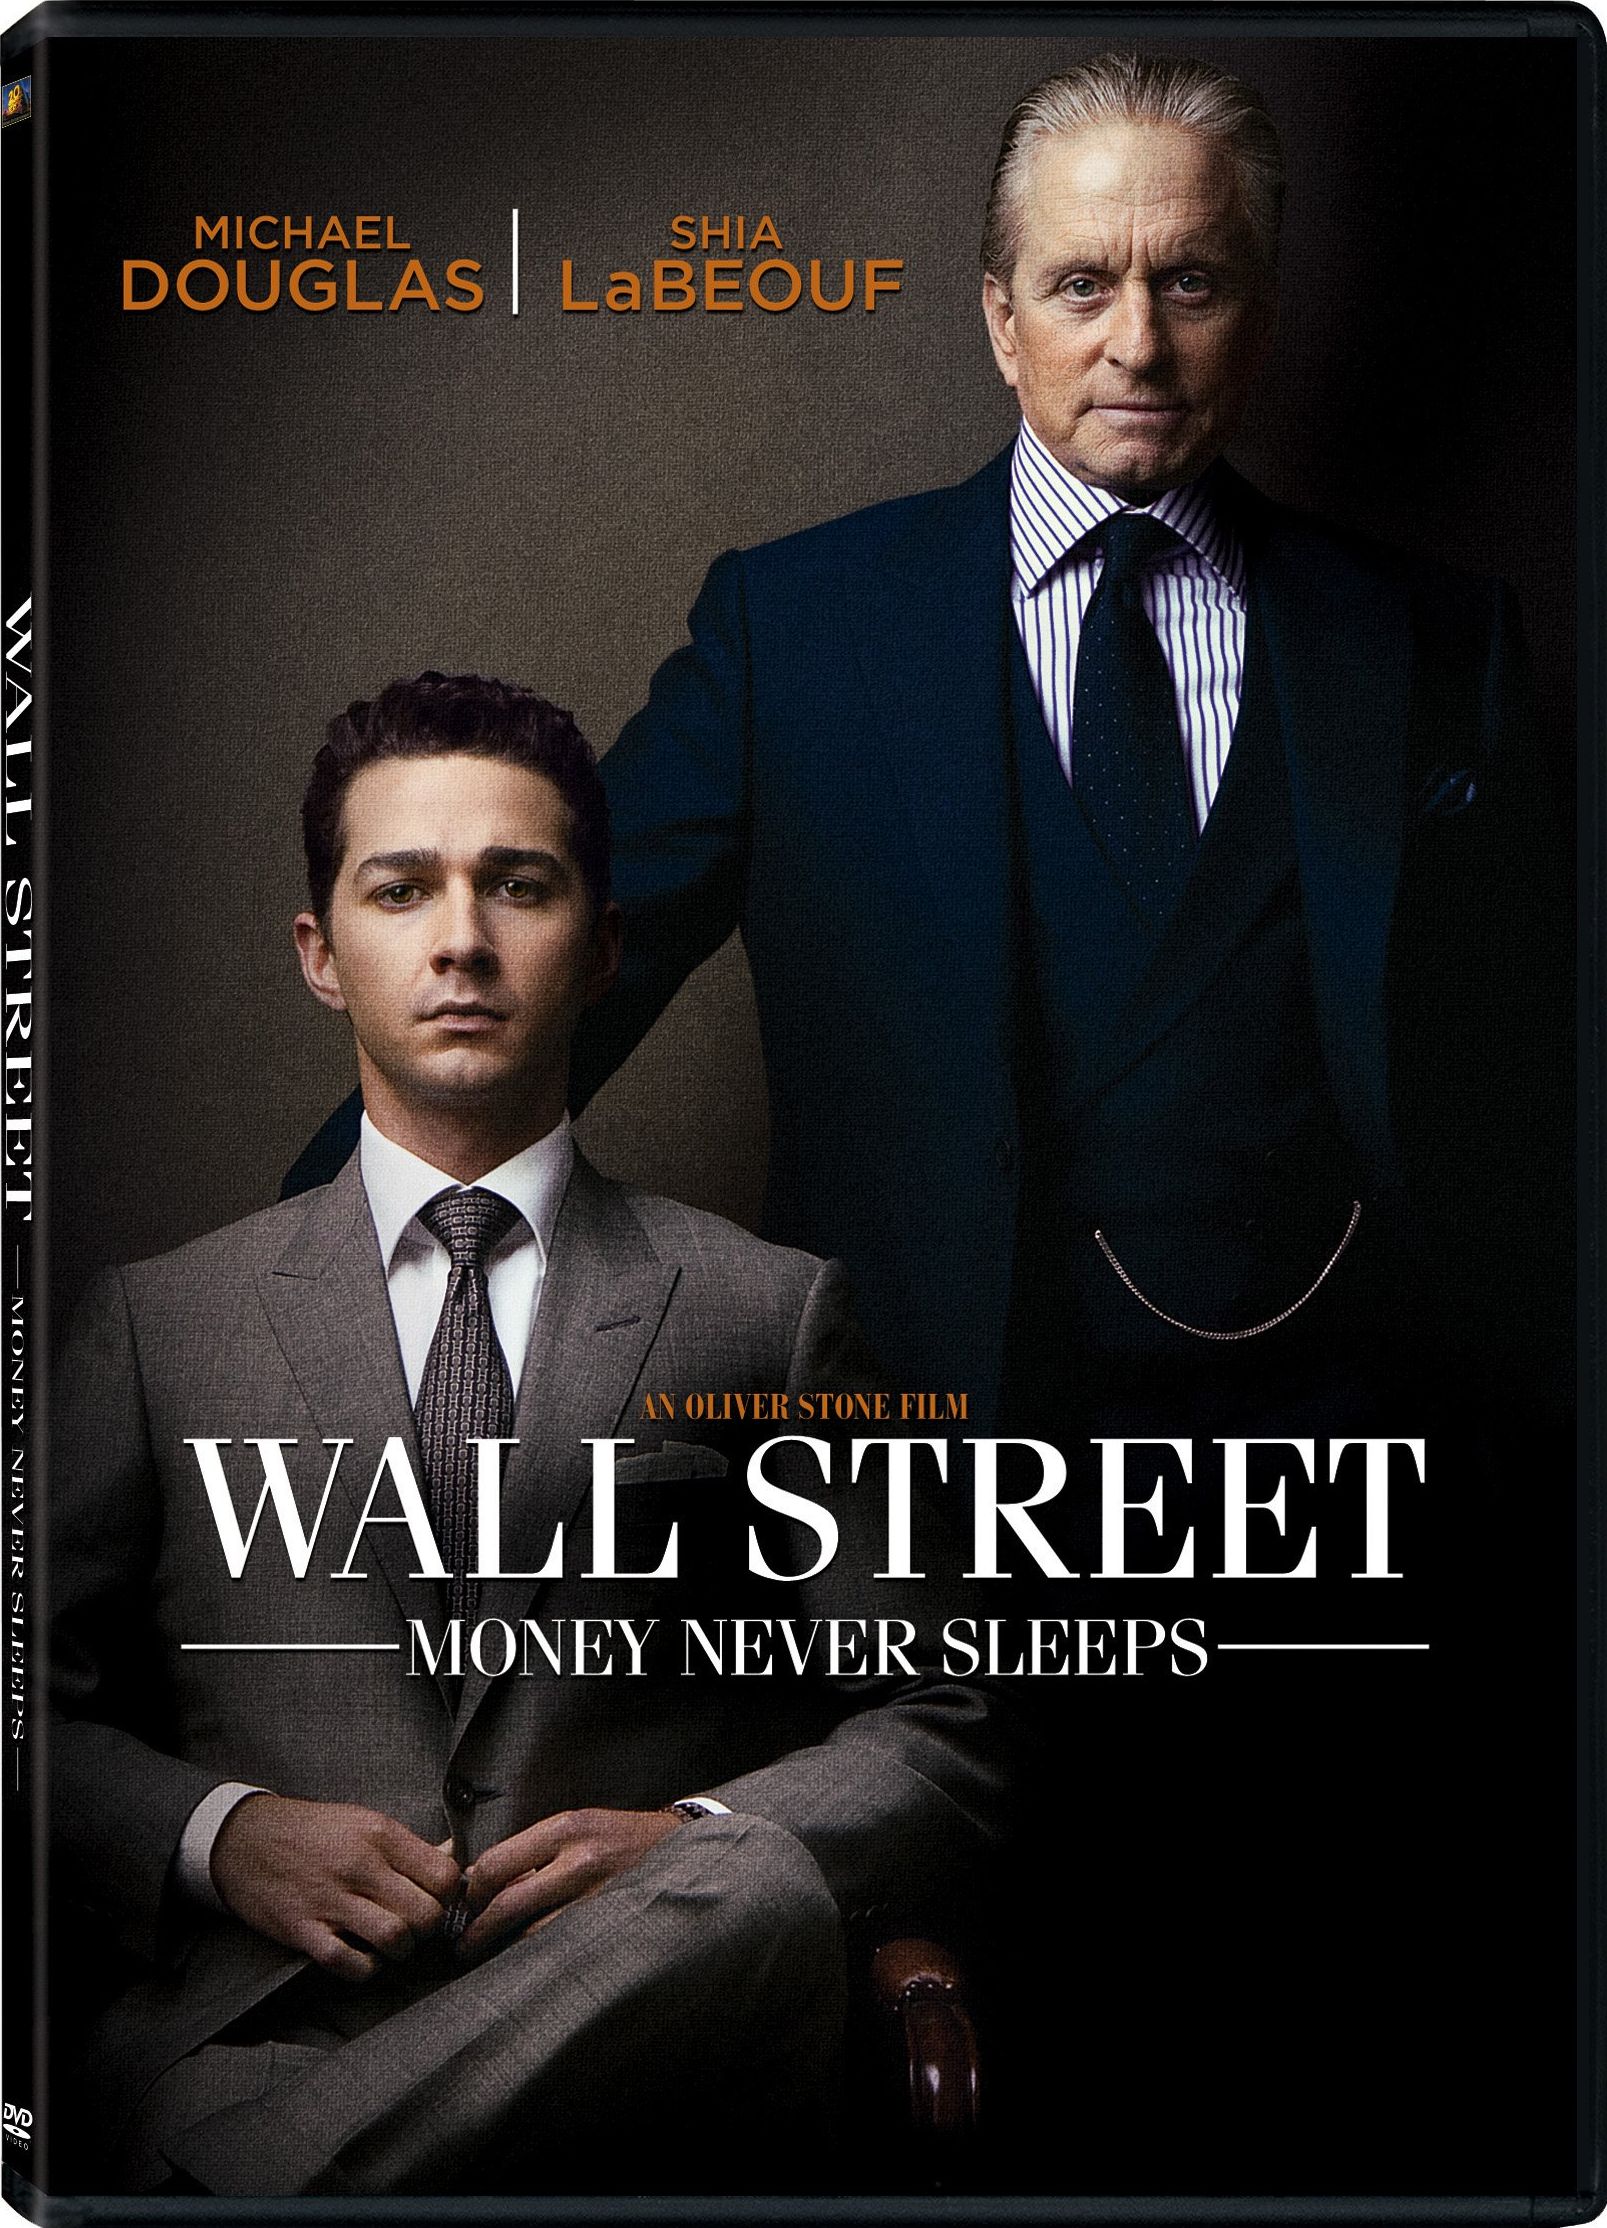 Wall Street: Money Never Sleeps DVD Release Date December 21, 20101607 x 2228